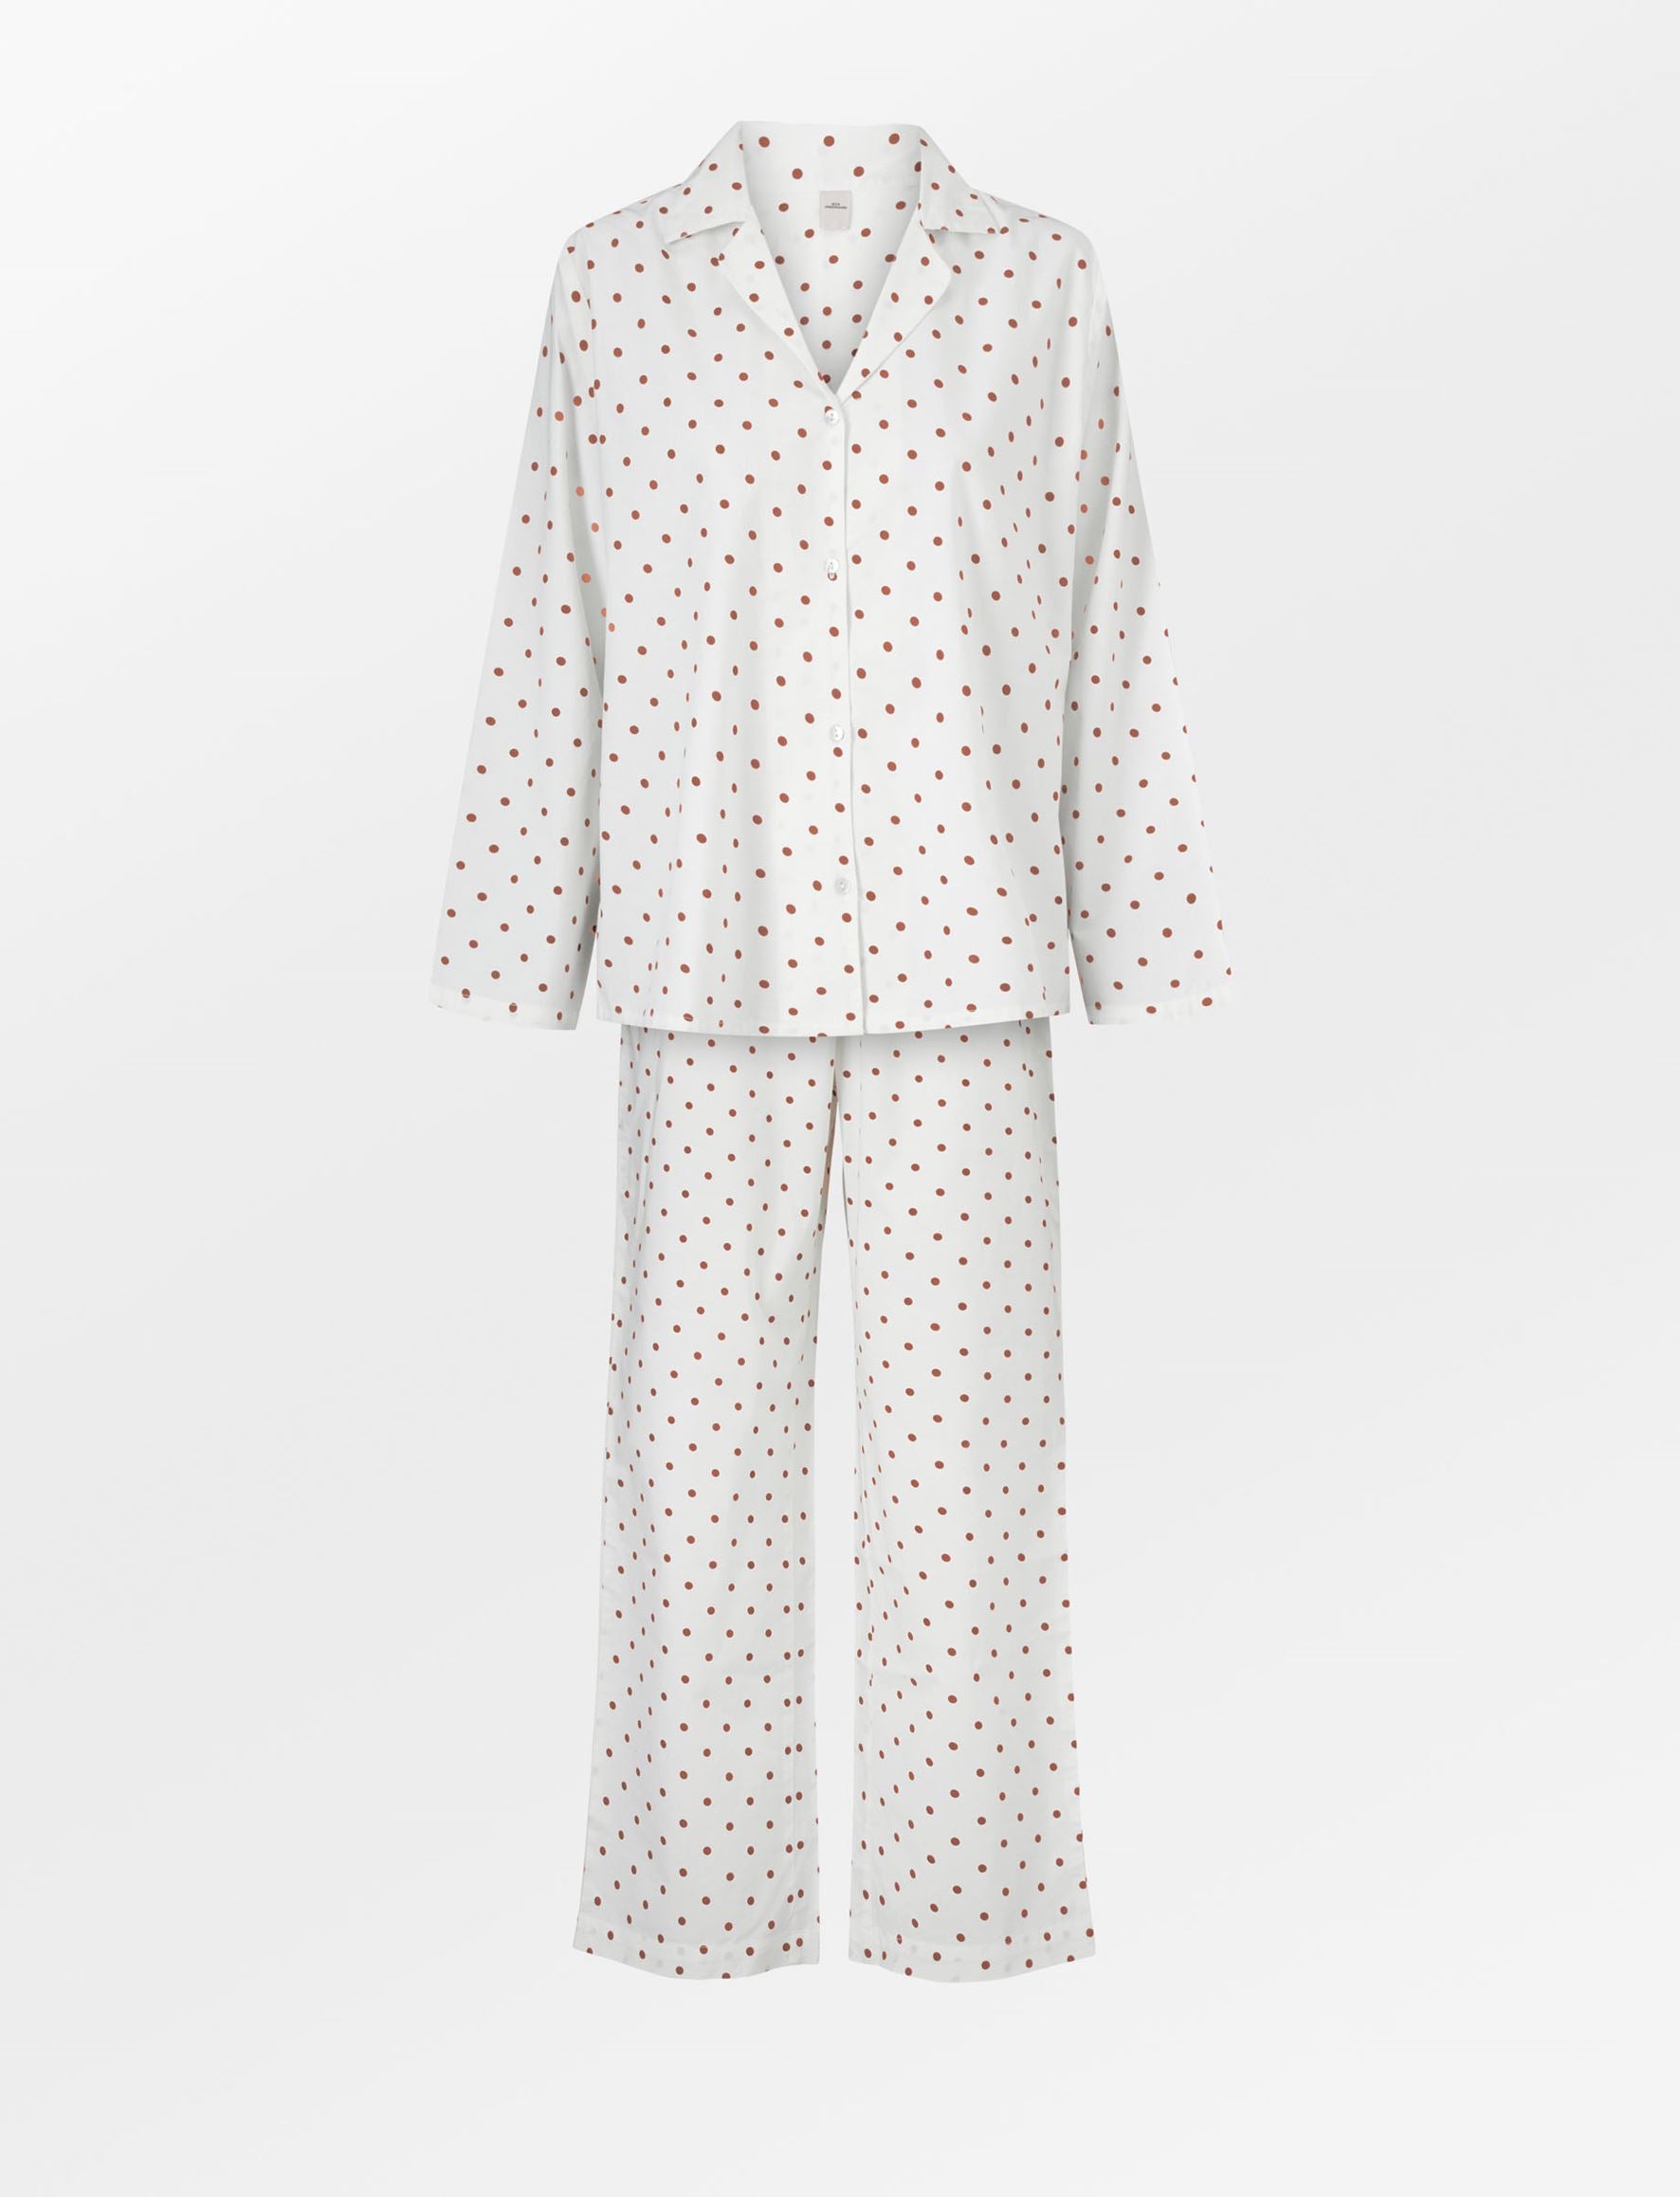 Dot Pyjamas Set - Caramel Brown Clothing   BeckSöndergaard.no